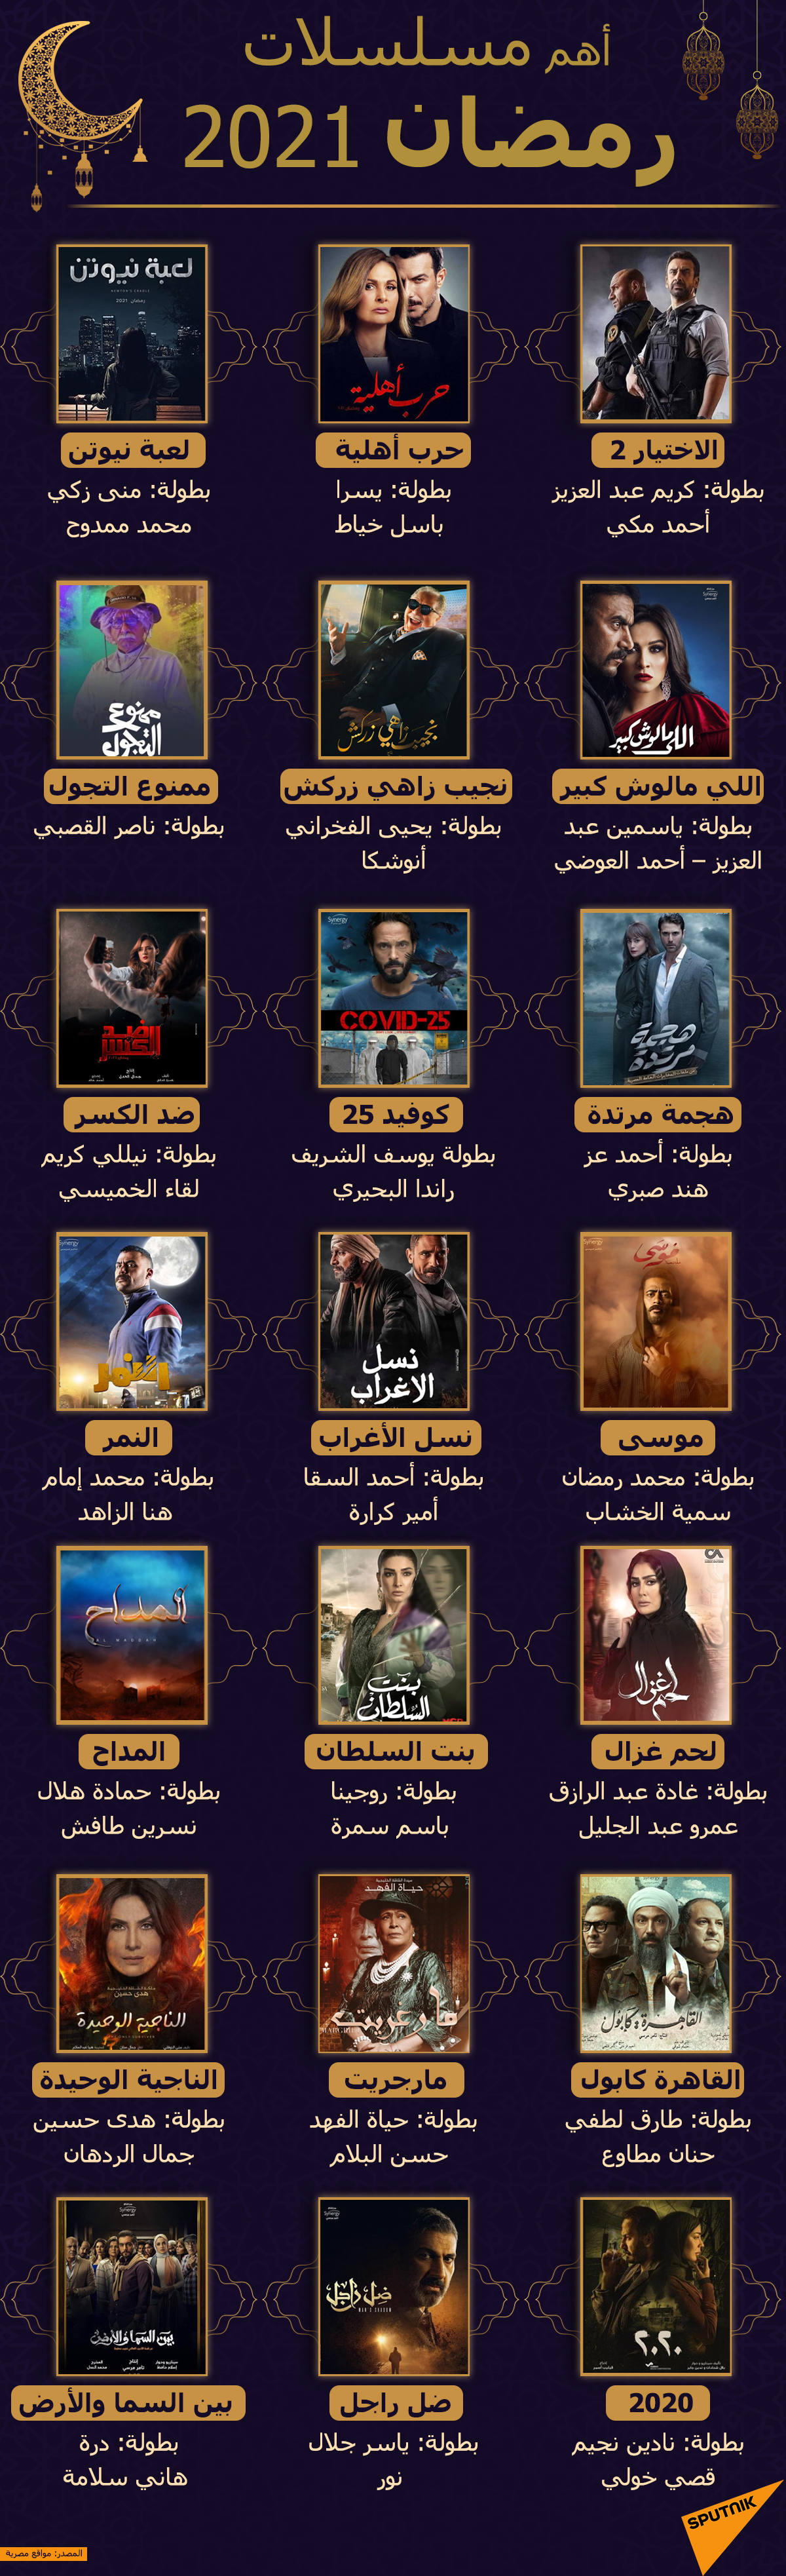 أهم المسلسلات المنافسة في سباق رمضان 2021 - سبوتنيك عربي, 1920, 01.04.2021